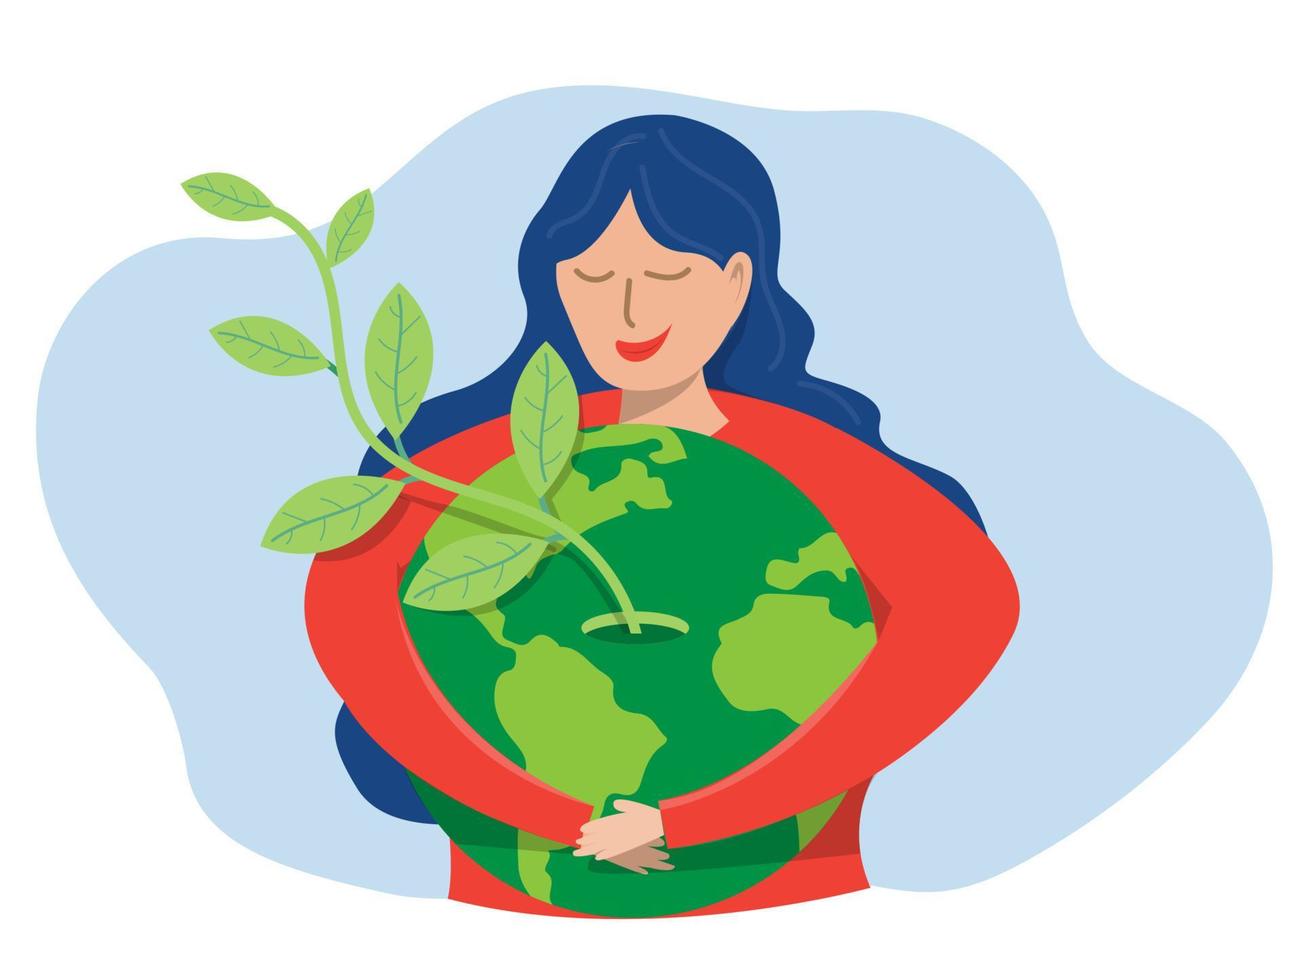 energia eco verde do dia mundial da terra, jovem mulher abraçando o planeta terra com o dia mundial da terra e salve o conceito do planeta de conservação, proteção e consumo razoável de recursos naturais. vetor